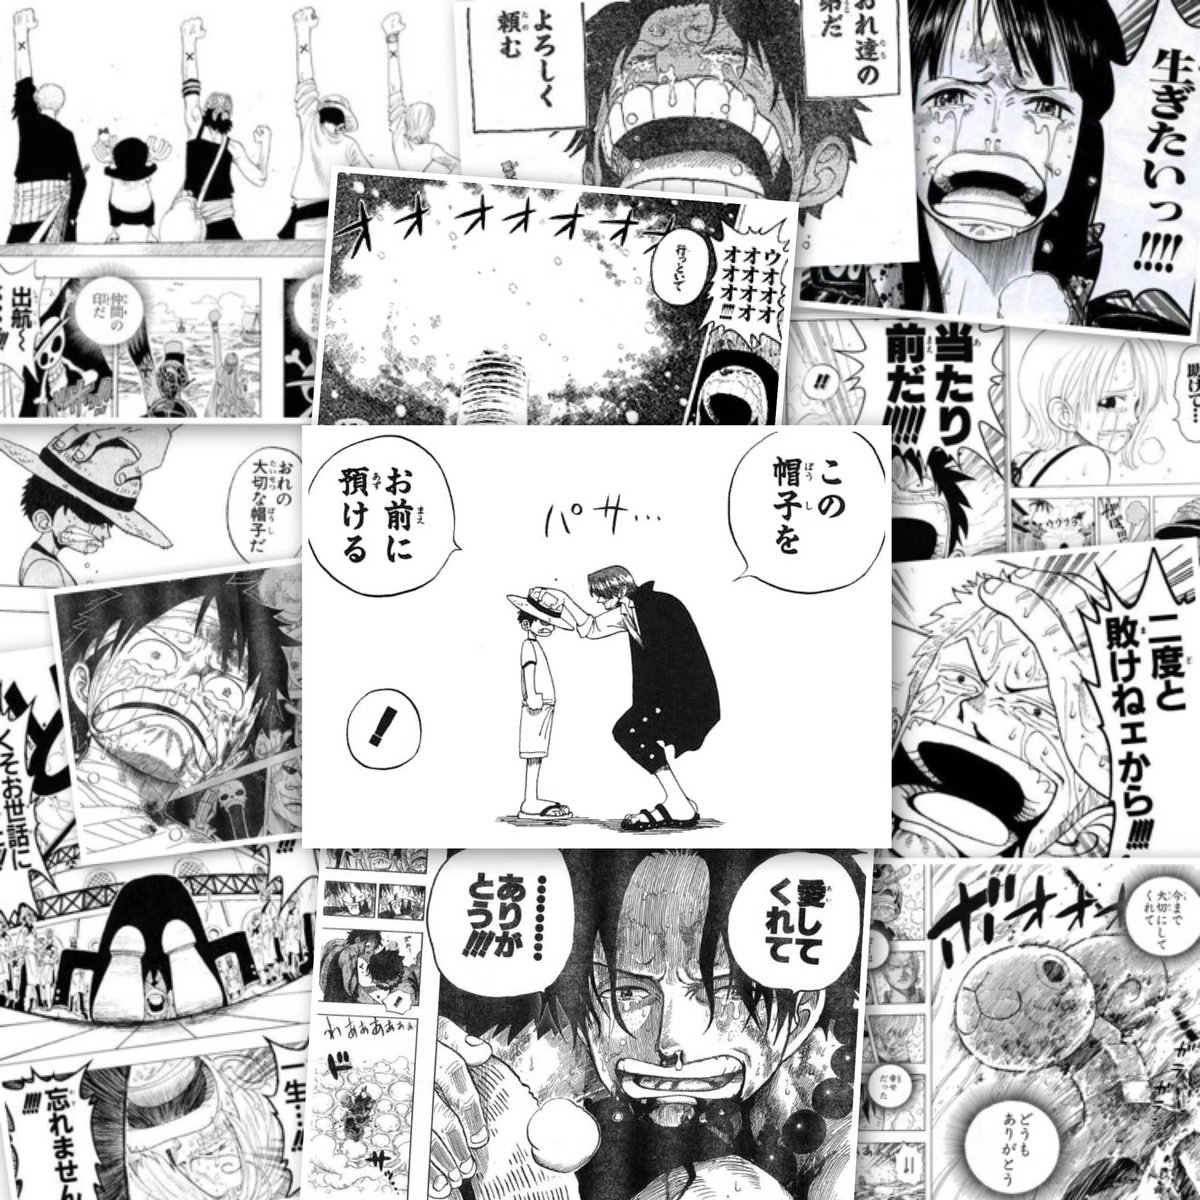 توییتر Hiromu در توییتر 今までたくさんの感動をありがとう One Pieceはちっちゃい頃から読んでいる 1番好きな漫画です もう少し なんて言わないでもっともっと連載してほしい これからも期待してます Onepiece ワンピース周年 周年おめでとう 尾田っち